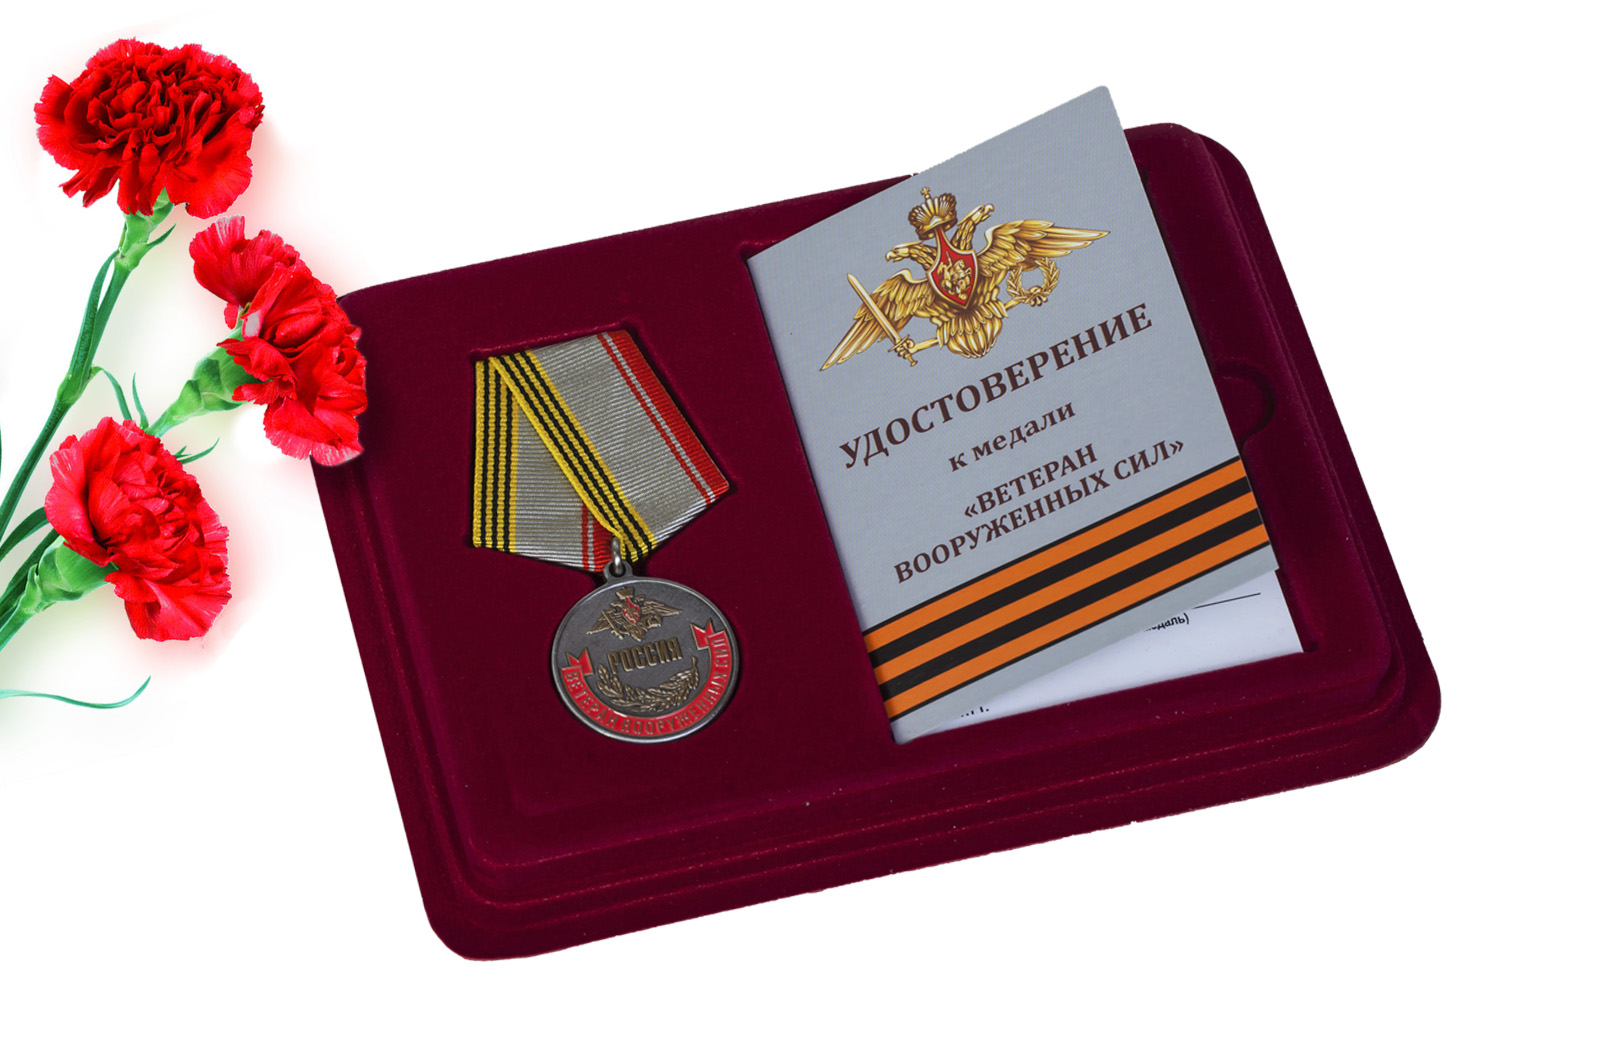 Купить медаль Ветеран Вооруженных сил России в подарок мужчине